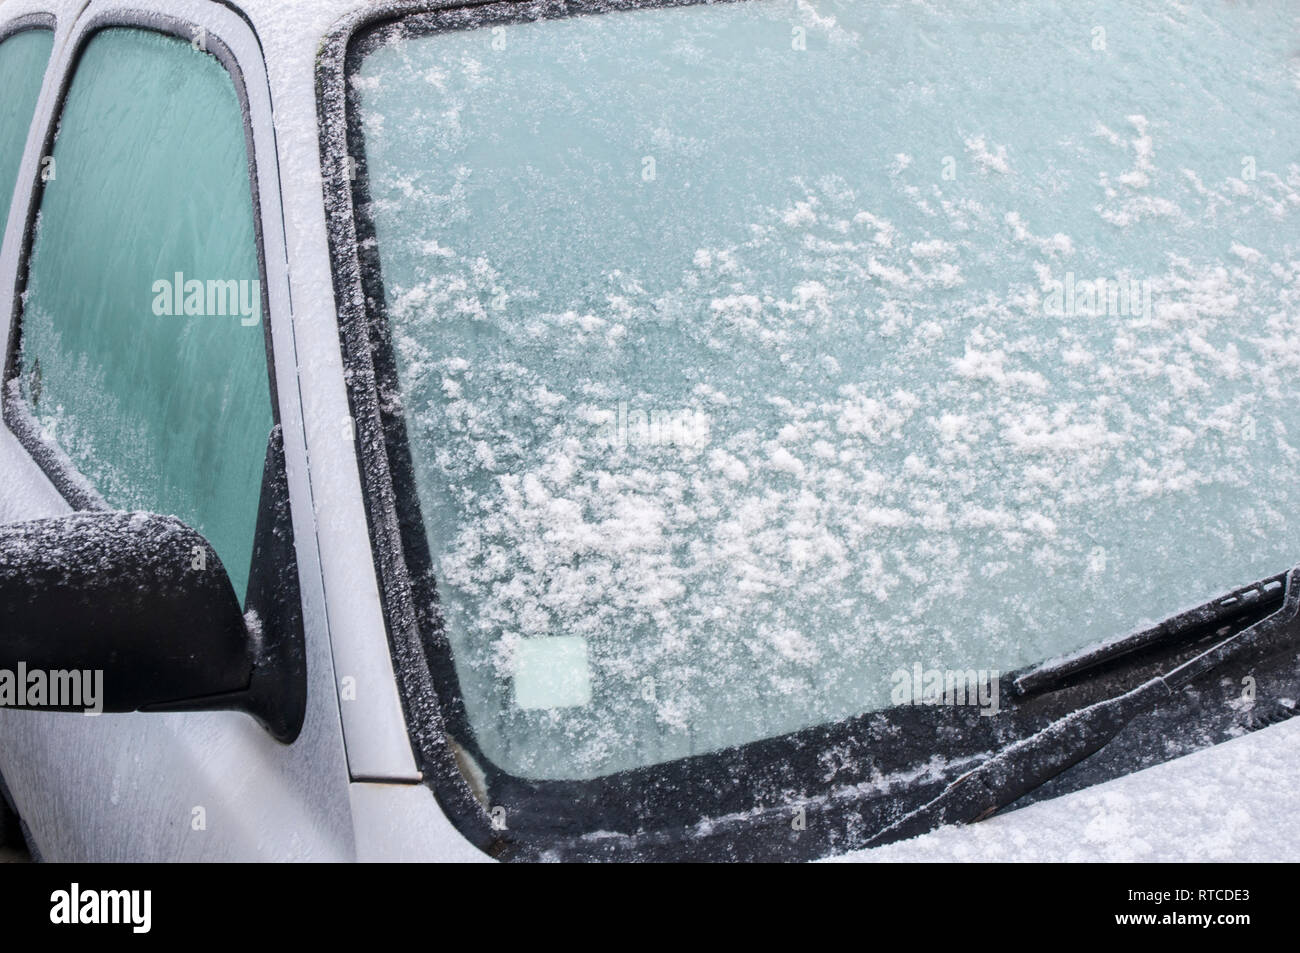 https://c8.alamy.com/compde/rtcde3/frost-und-eis-auf-dem-auto-windschutzscheibe-im-januar-rtcde3.jpg